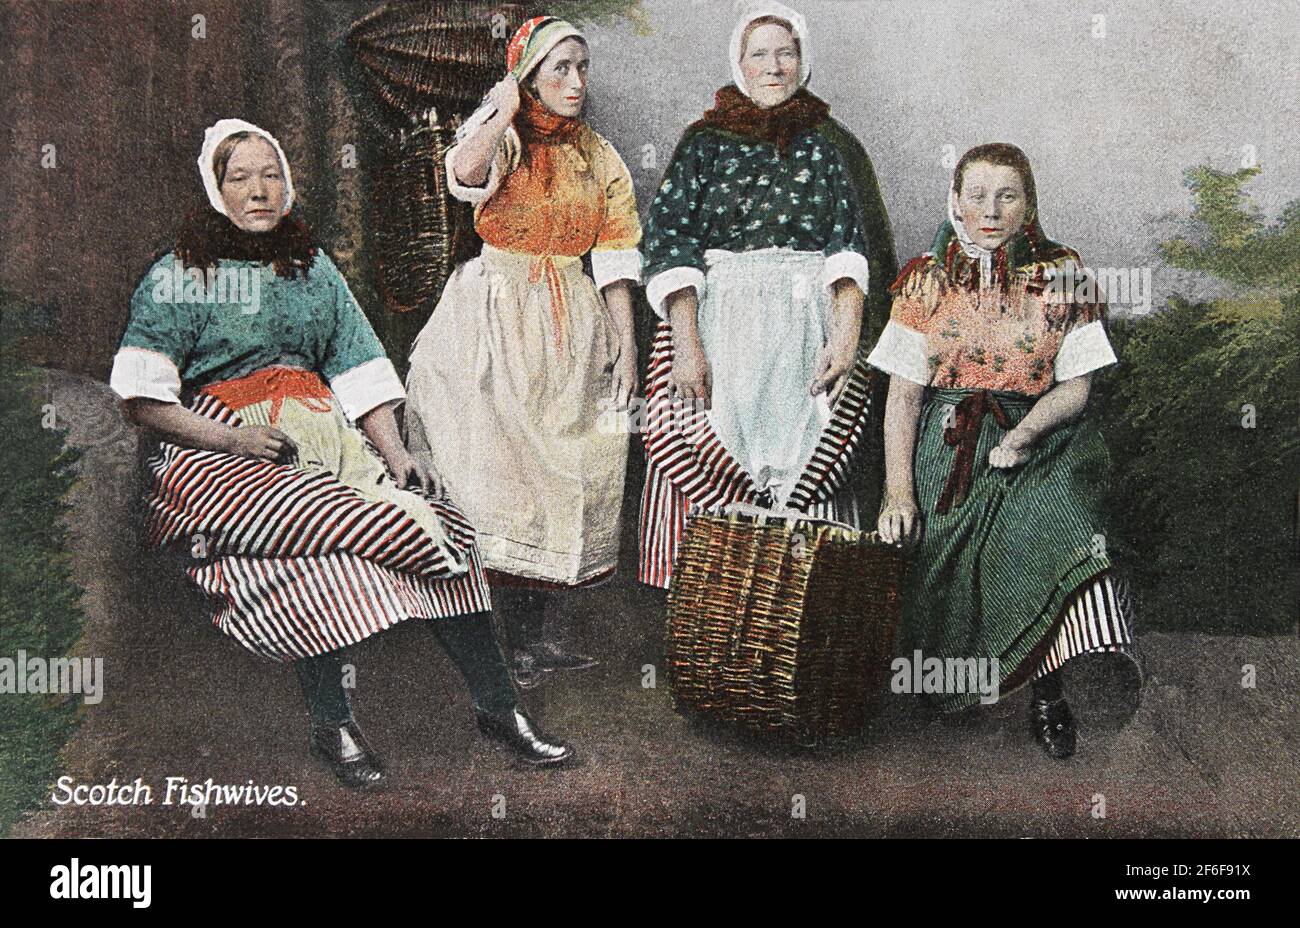 Handkolorierte Postkarte mit dem Postzeichen 1906, die schottische Fischfrauen auf einem formellen Gruppenfoto zeigt. Stockfoto